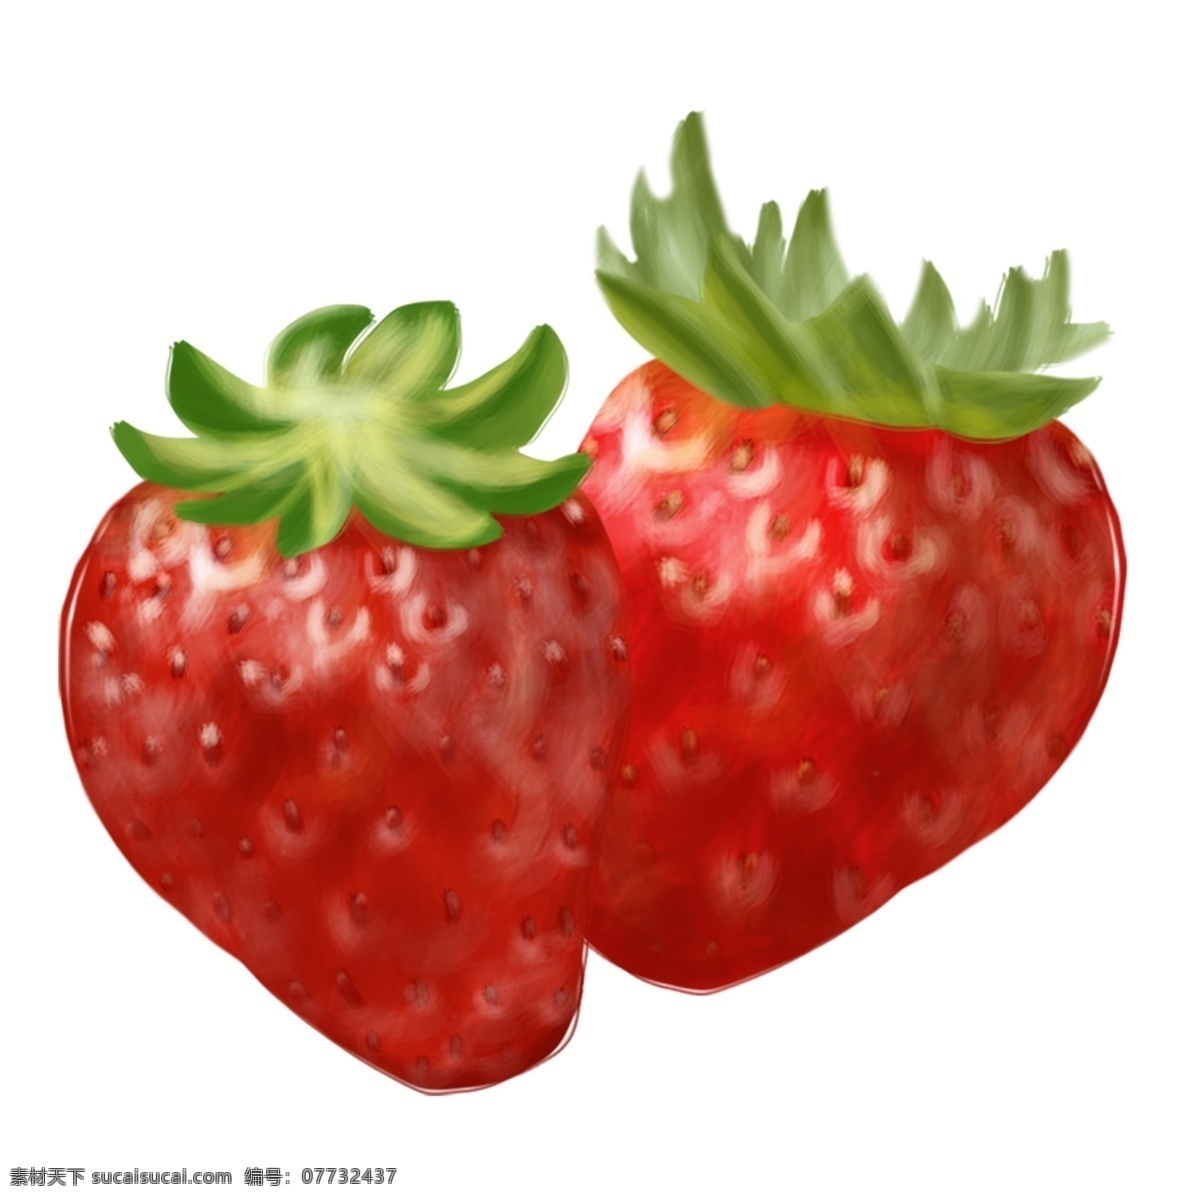 夏季 水果 草莓 手绘 插画 食物 吃 甜 红色 绿色 夏天 凉快 好吃 可爱 甜美